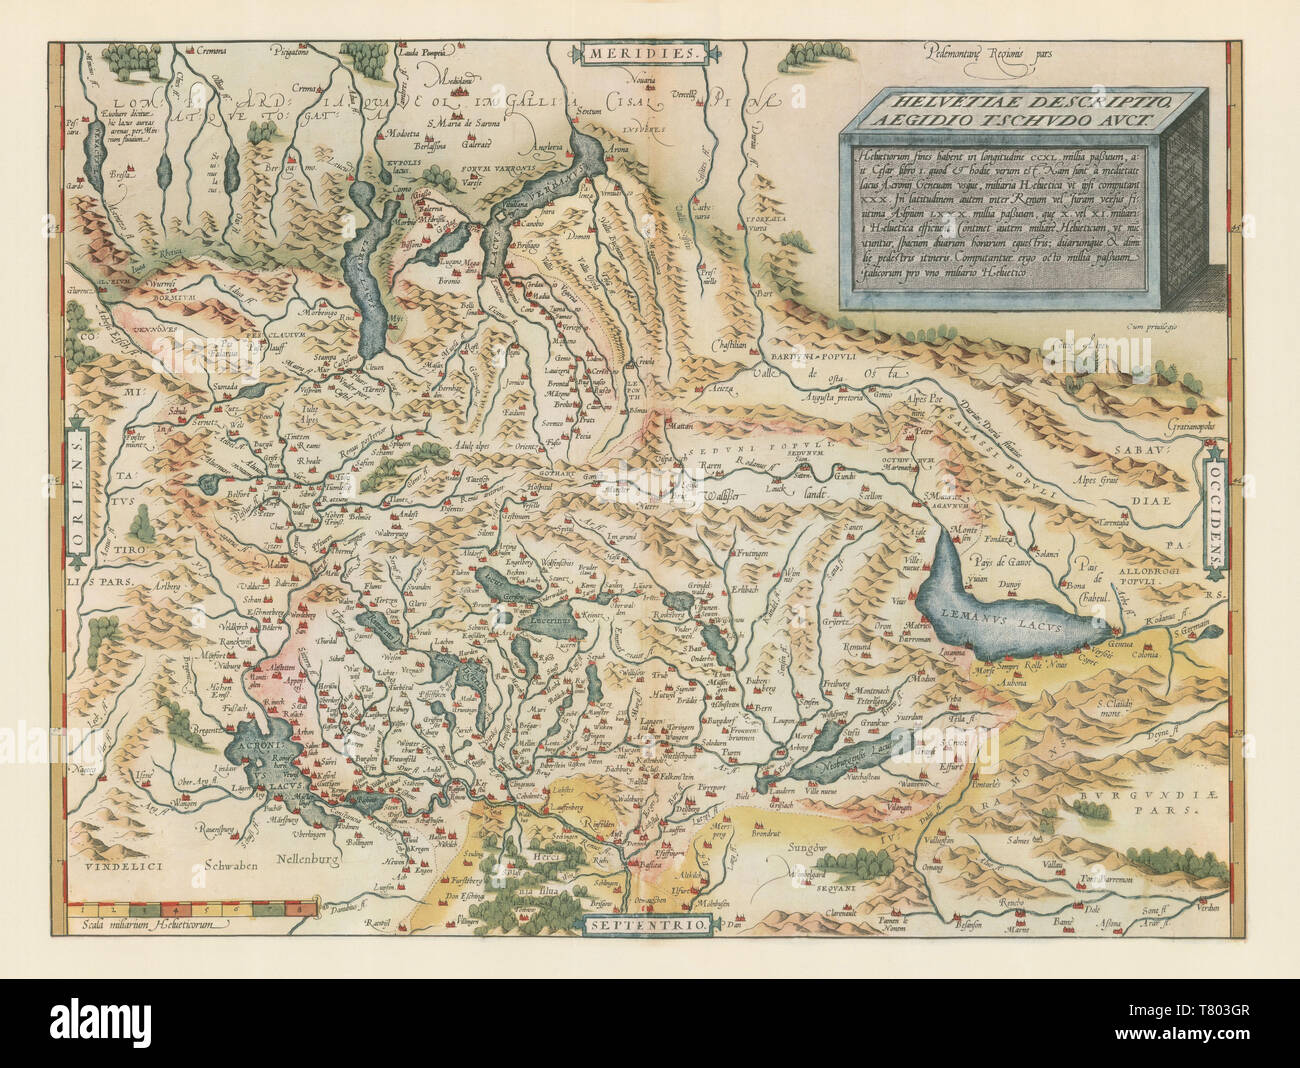 Theatrum Orbis Terrarum, Switzerland, 1570 Stock Photo